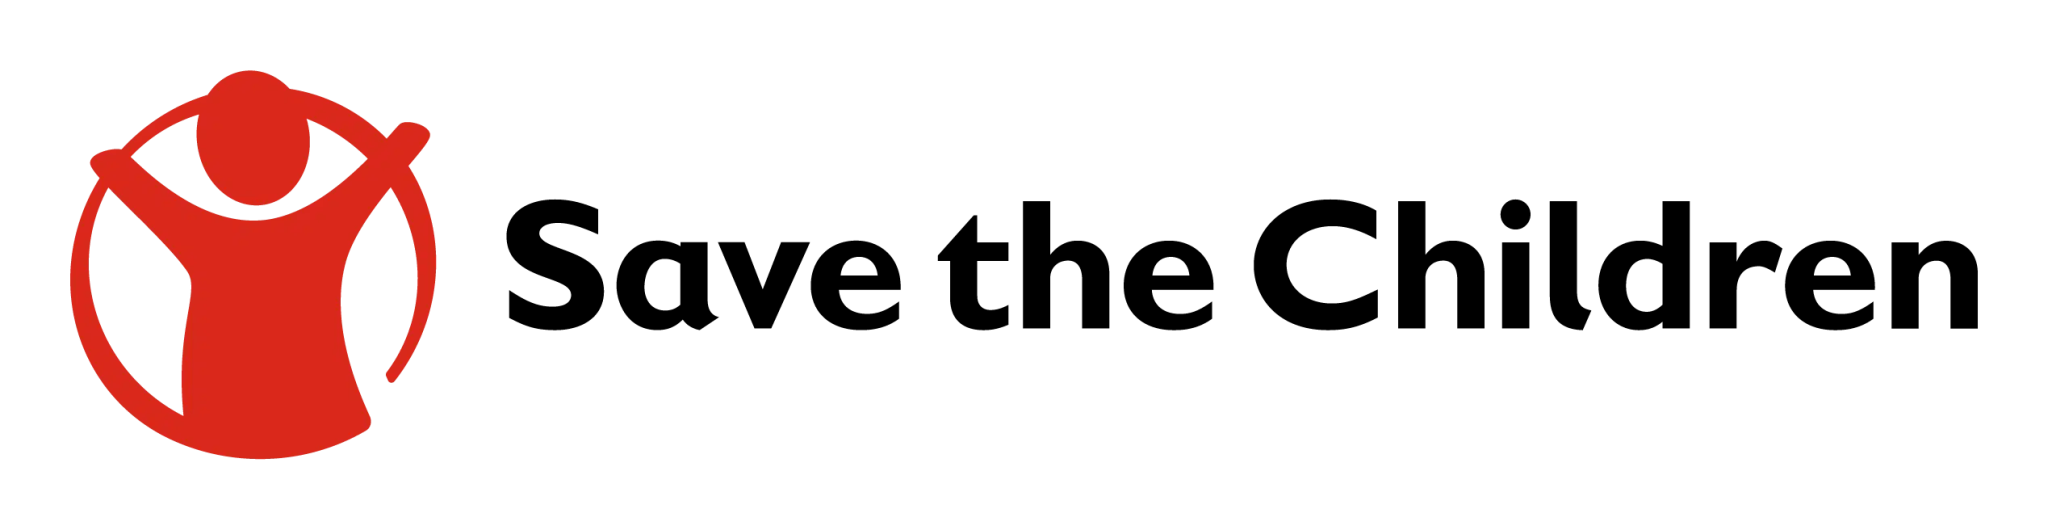 save-the-children-organisation-logo